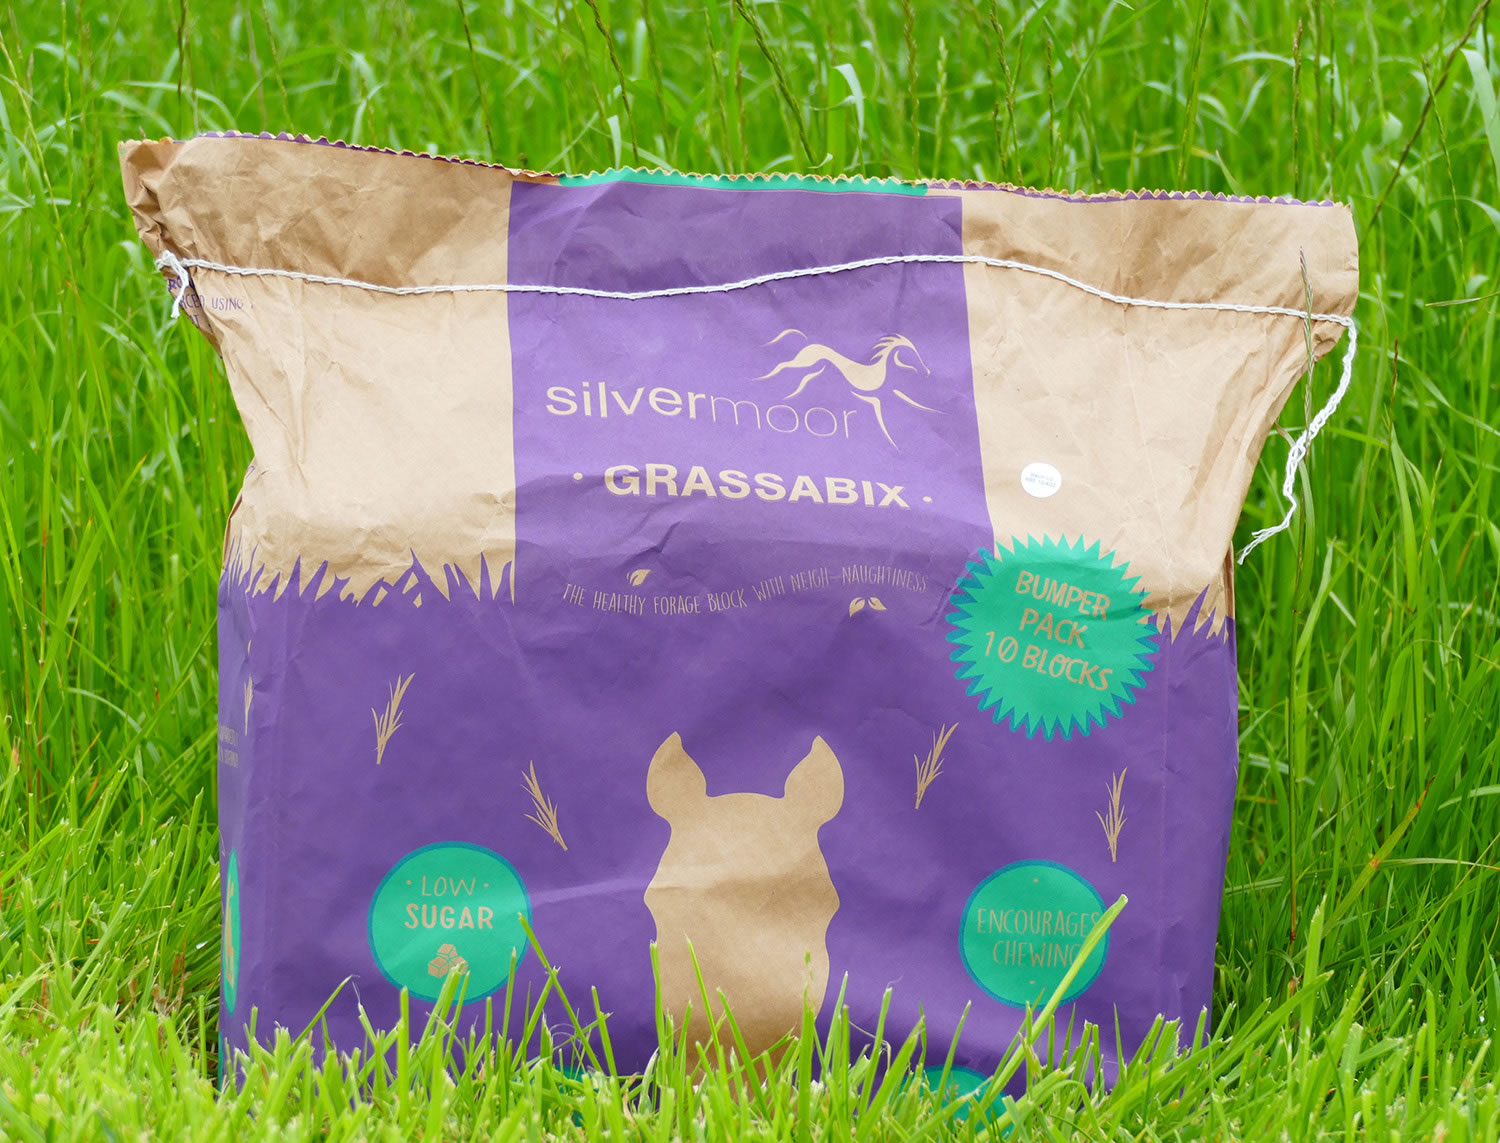 Silvermoor Grassabix Dried Grass Bumper Pack 10kg For Horses 